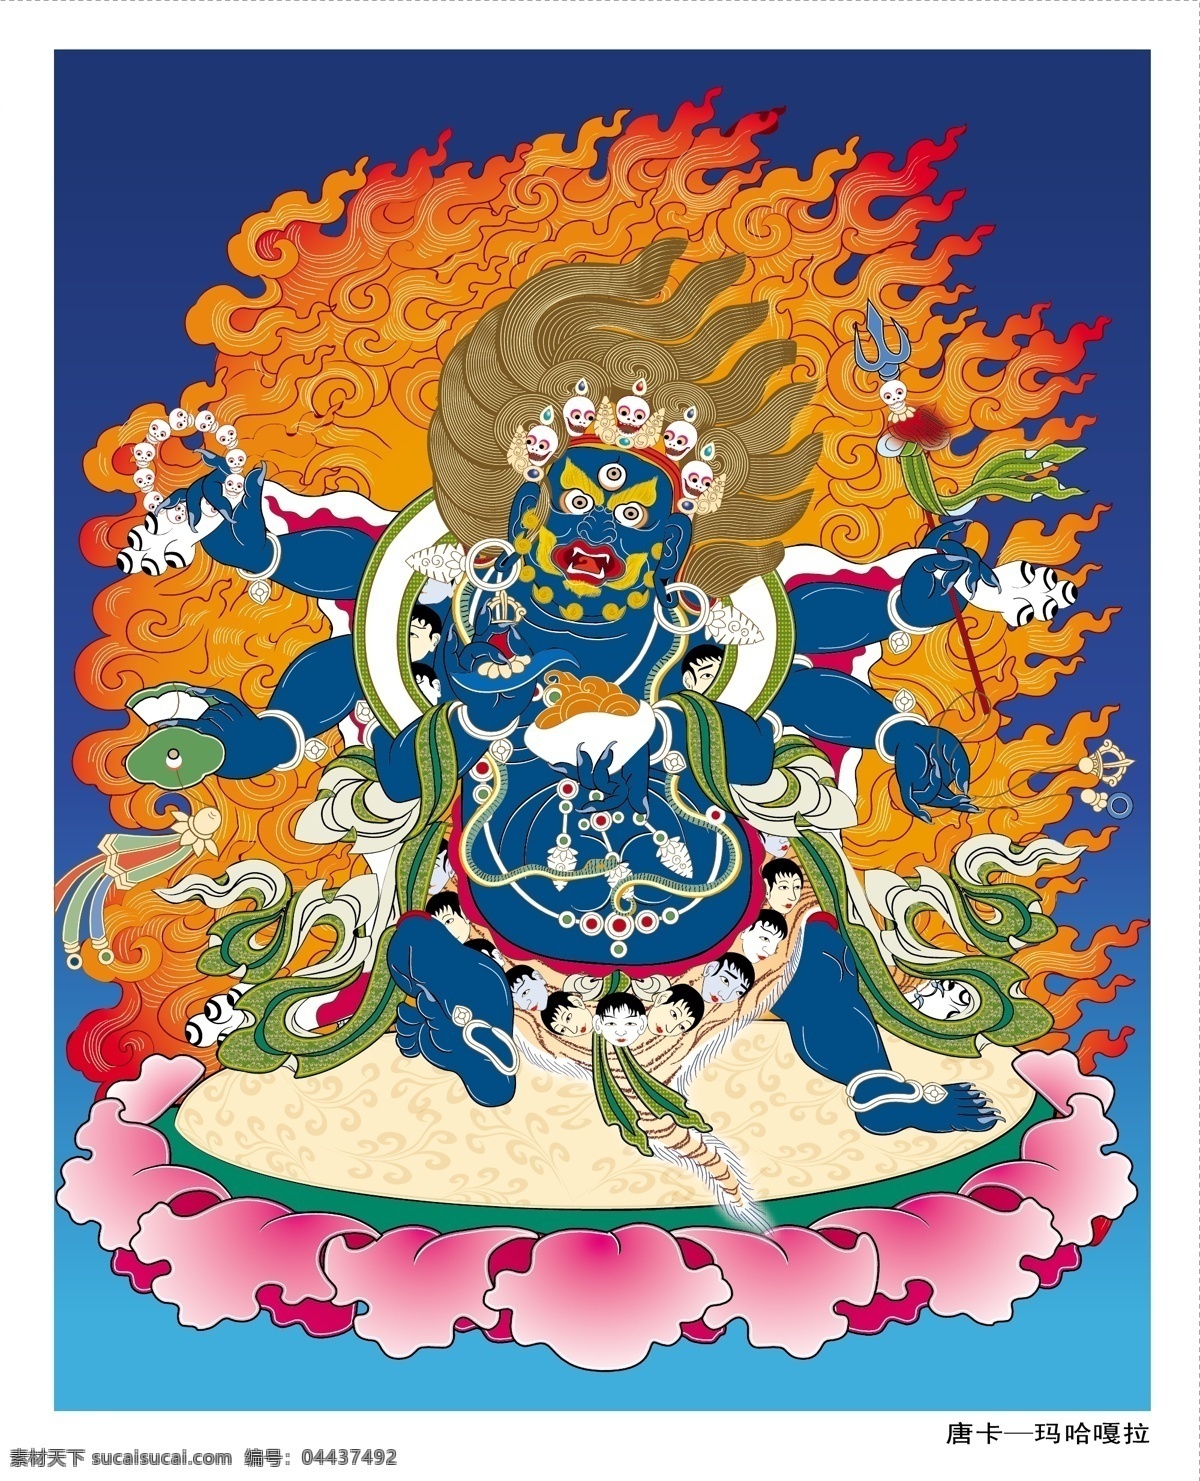 唐卡 玛哈嘎拉 佛像 宗教人物 宗教 填色 矢量佛像 矢量人物 手绘 壁画 历史 信仰 密宗 藏传 文化艺术 宗教信仰